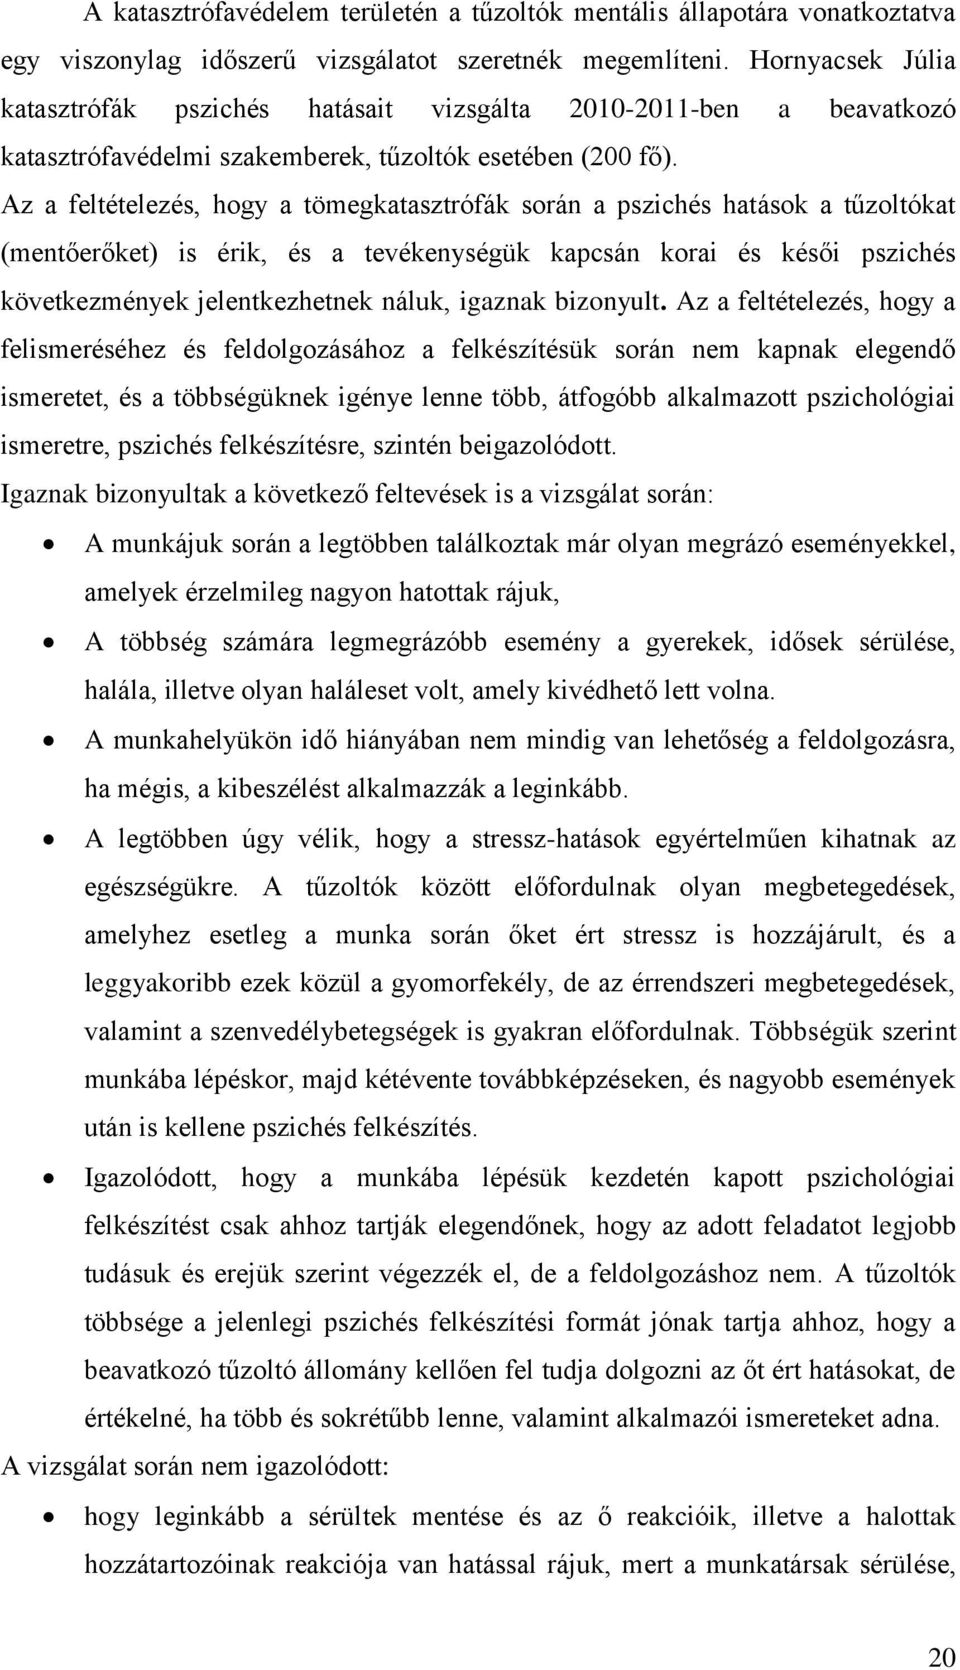 (PDF) A krónikus betegségek lélektana. Válság és megújulás | Judit Nóra Pintér - noelgold.hu